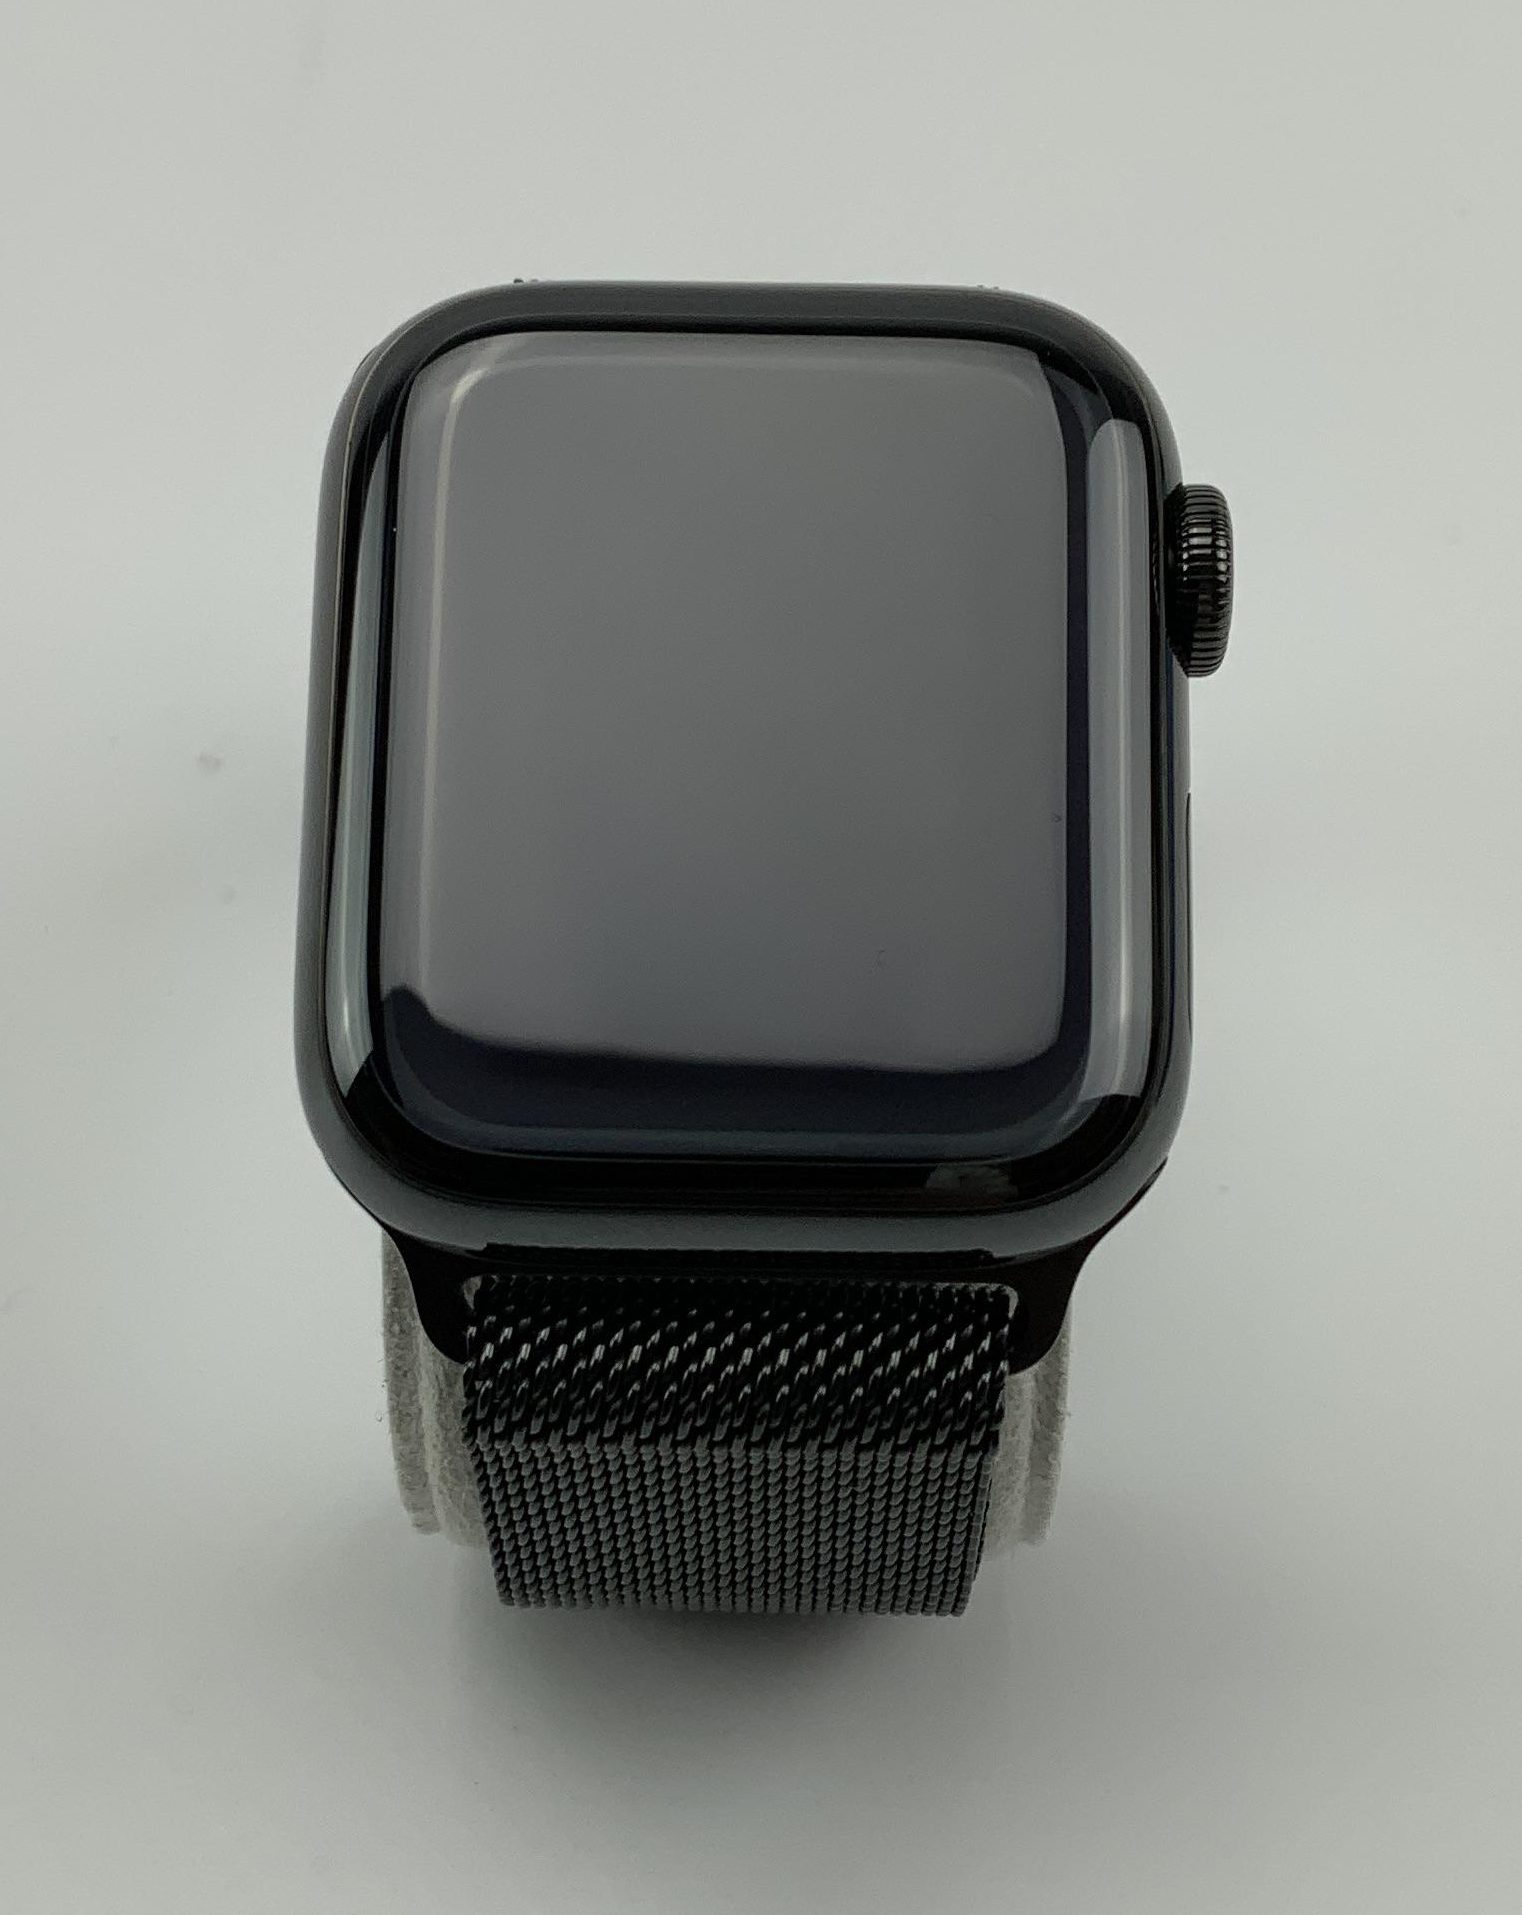 Watch Series 5 Steel Cellular (40mm), Space Black, bild 1